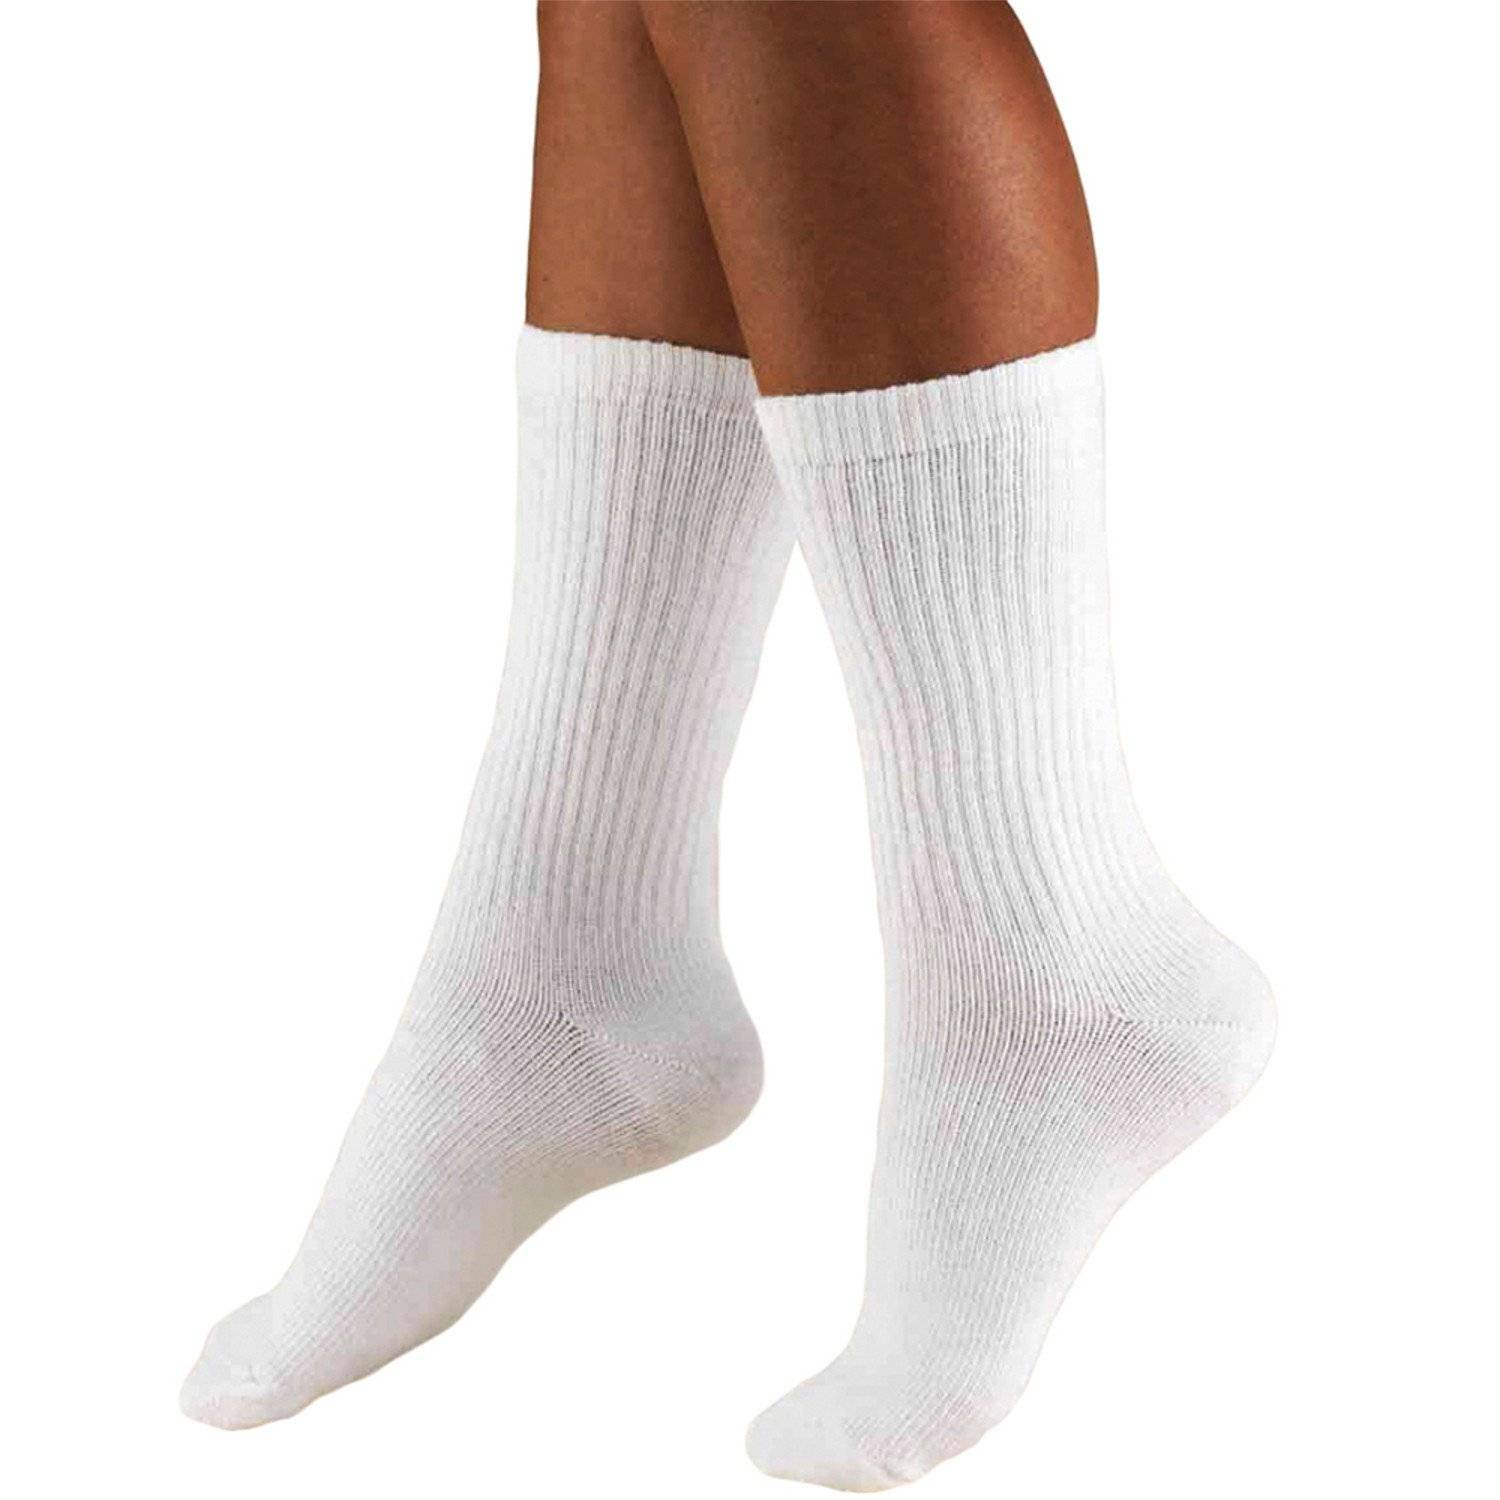 Men's Crew Length Socks Dress Socks